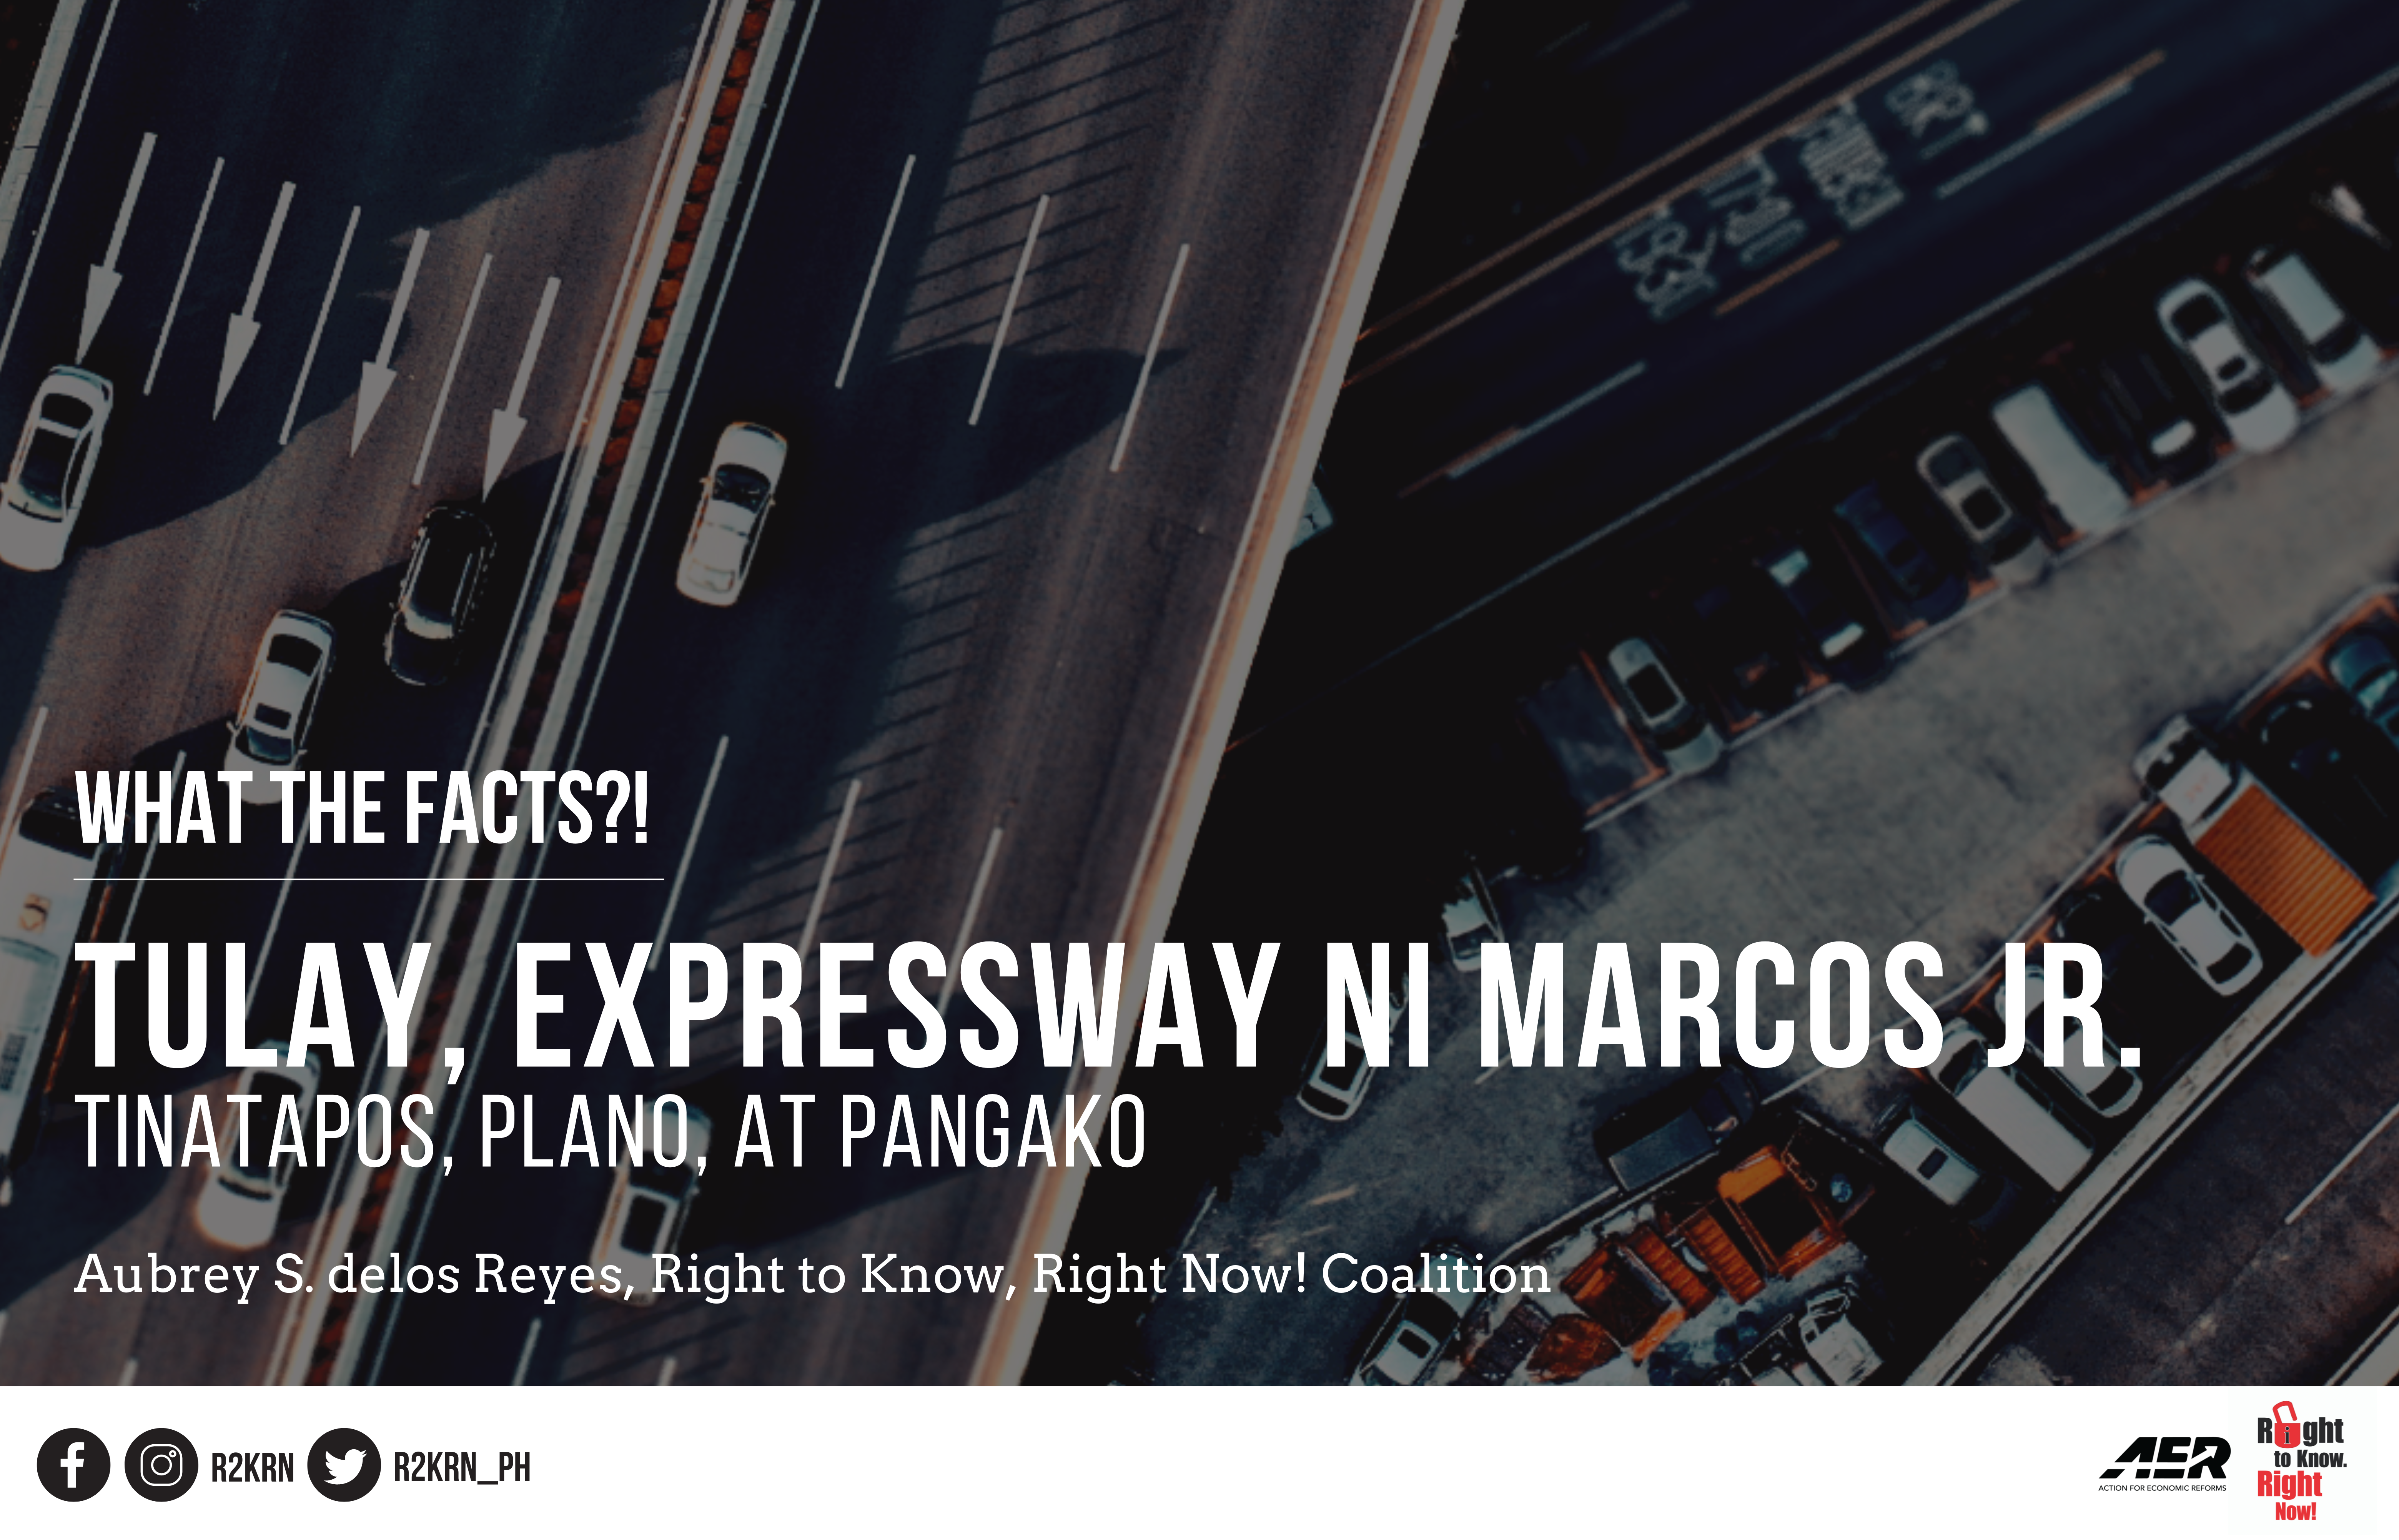 Tulay, expressway ni Marcos Jr.: Tinatapos, plano, at pangako